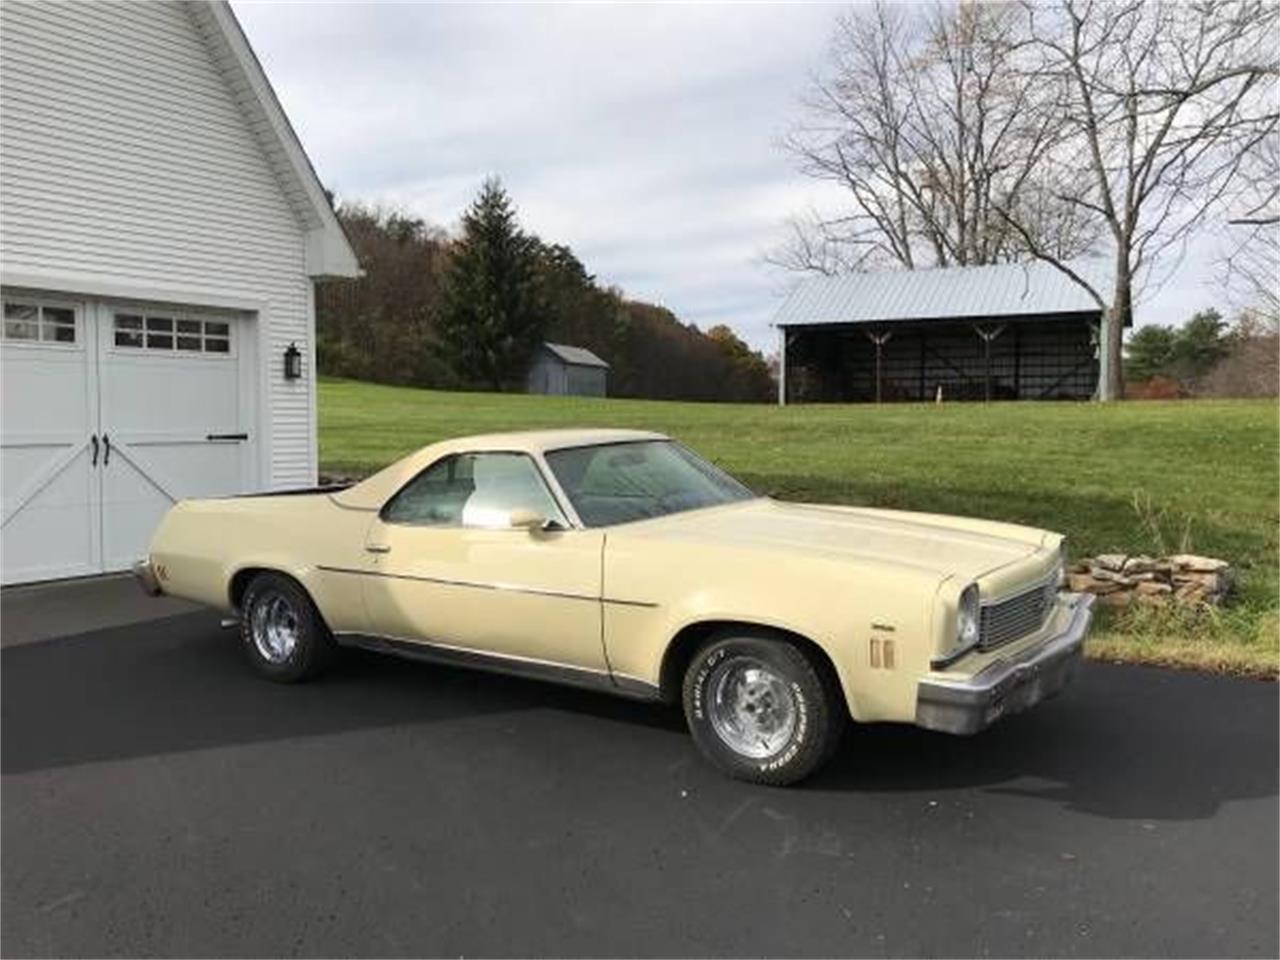 For Sale: 1973 Chevrolet El Camino in Cadillac, Michigan.